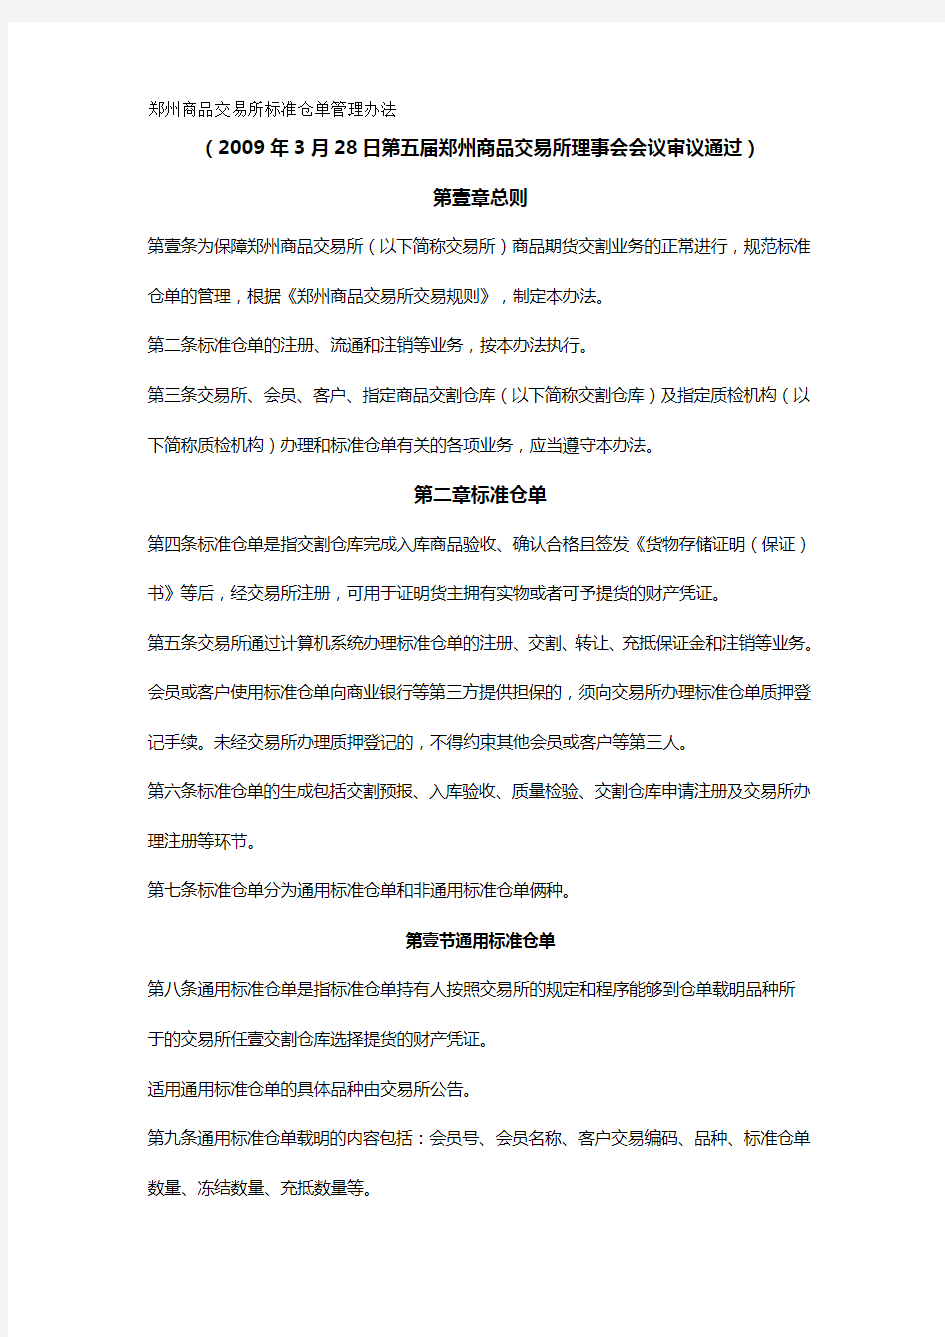 管理制度郑州商品交易所标准仓单管理办法